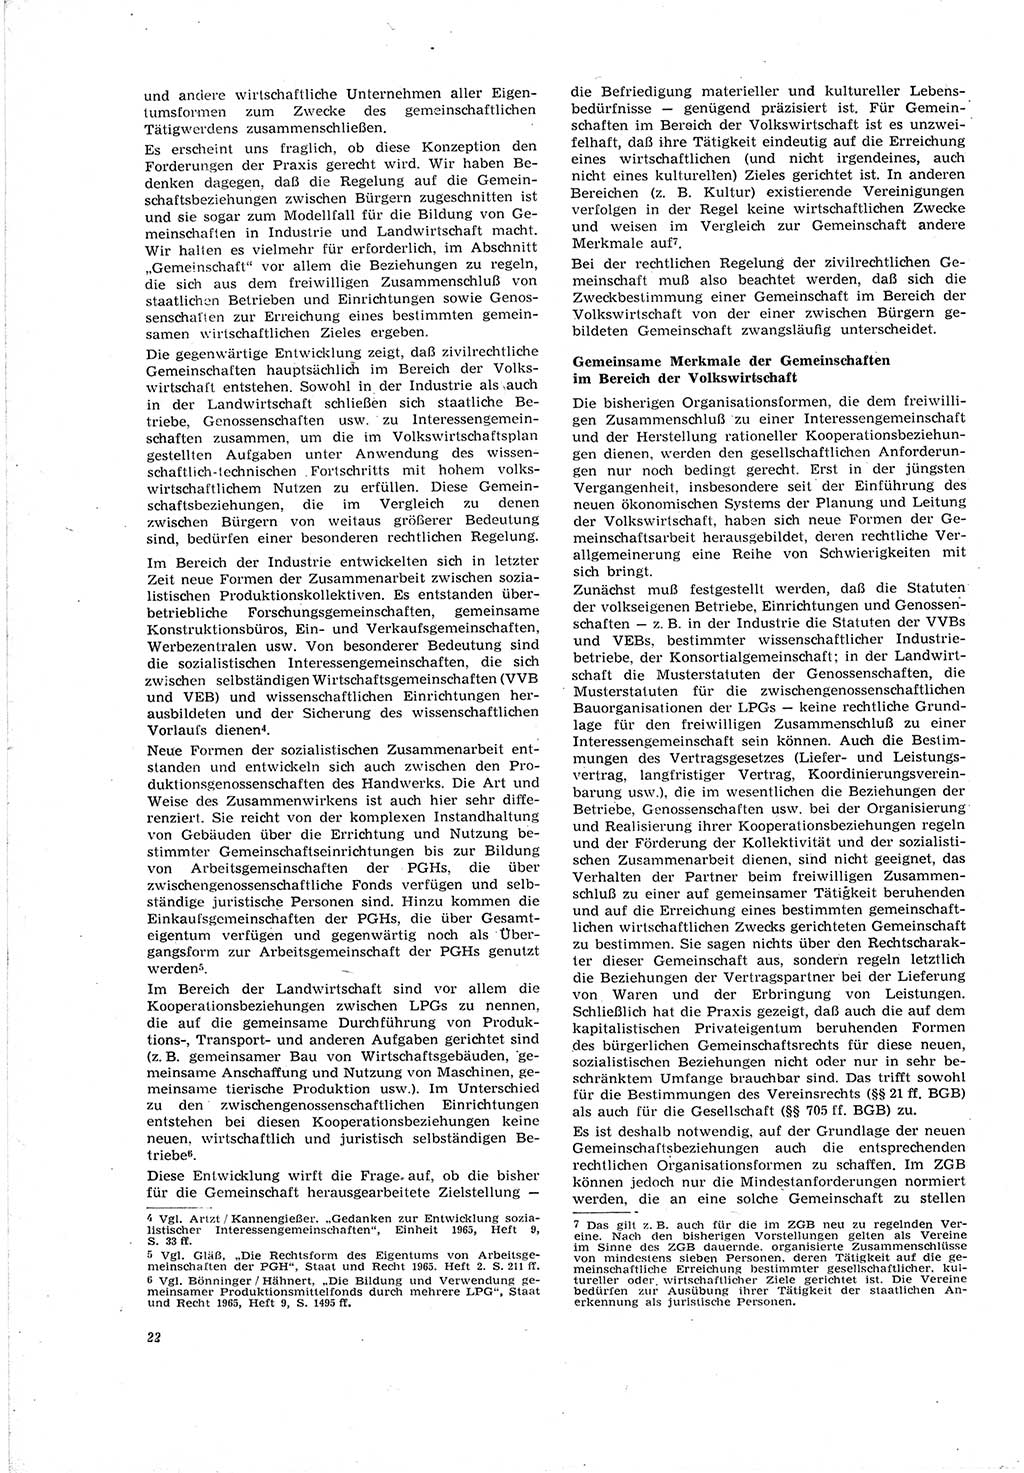 Neue Justiz (NJ), Zeitschrift für Recht und Rechtswissenschaft [Deutsche Demokratische Republik (DDR)], 20. Jahrgang 1966, Seite 22 (NJ DDR 1966, S. 22)